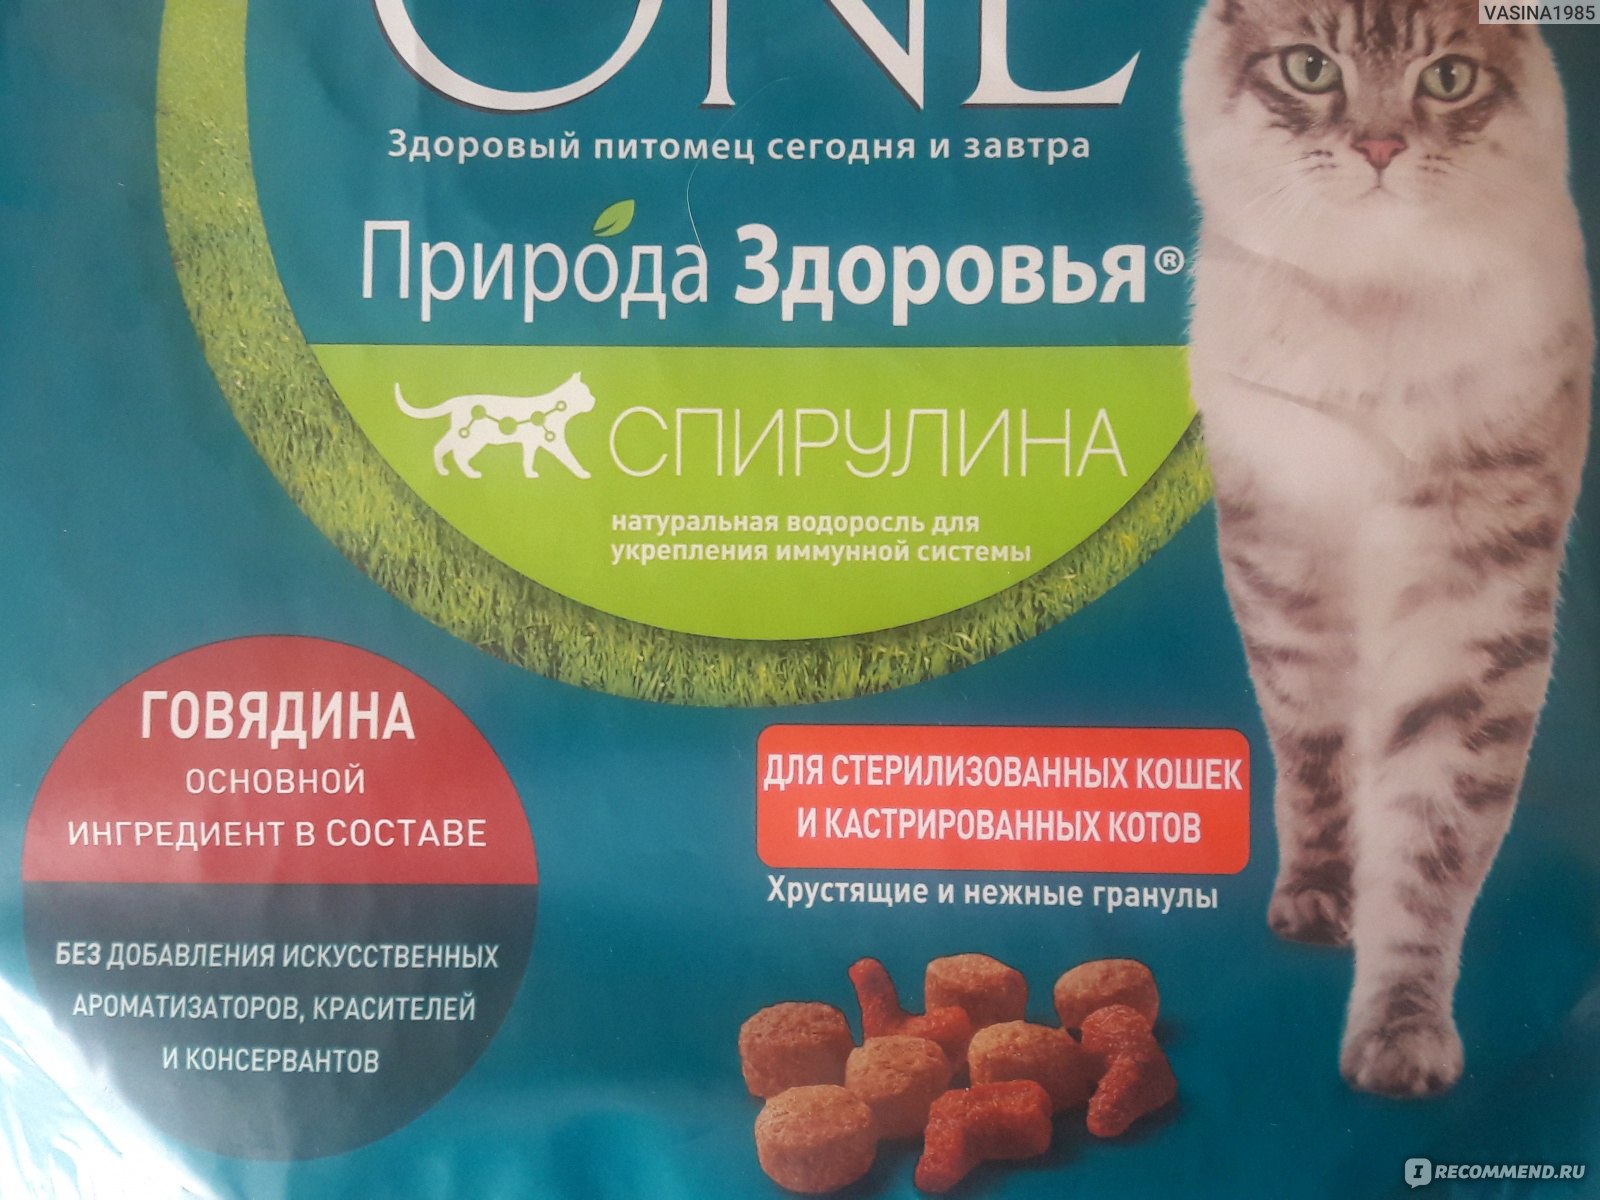 Корм для кошек «Пурина Ван» (Purina One)